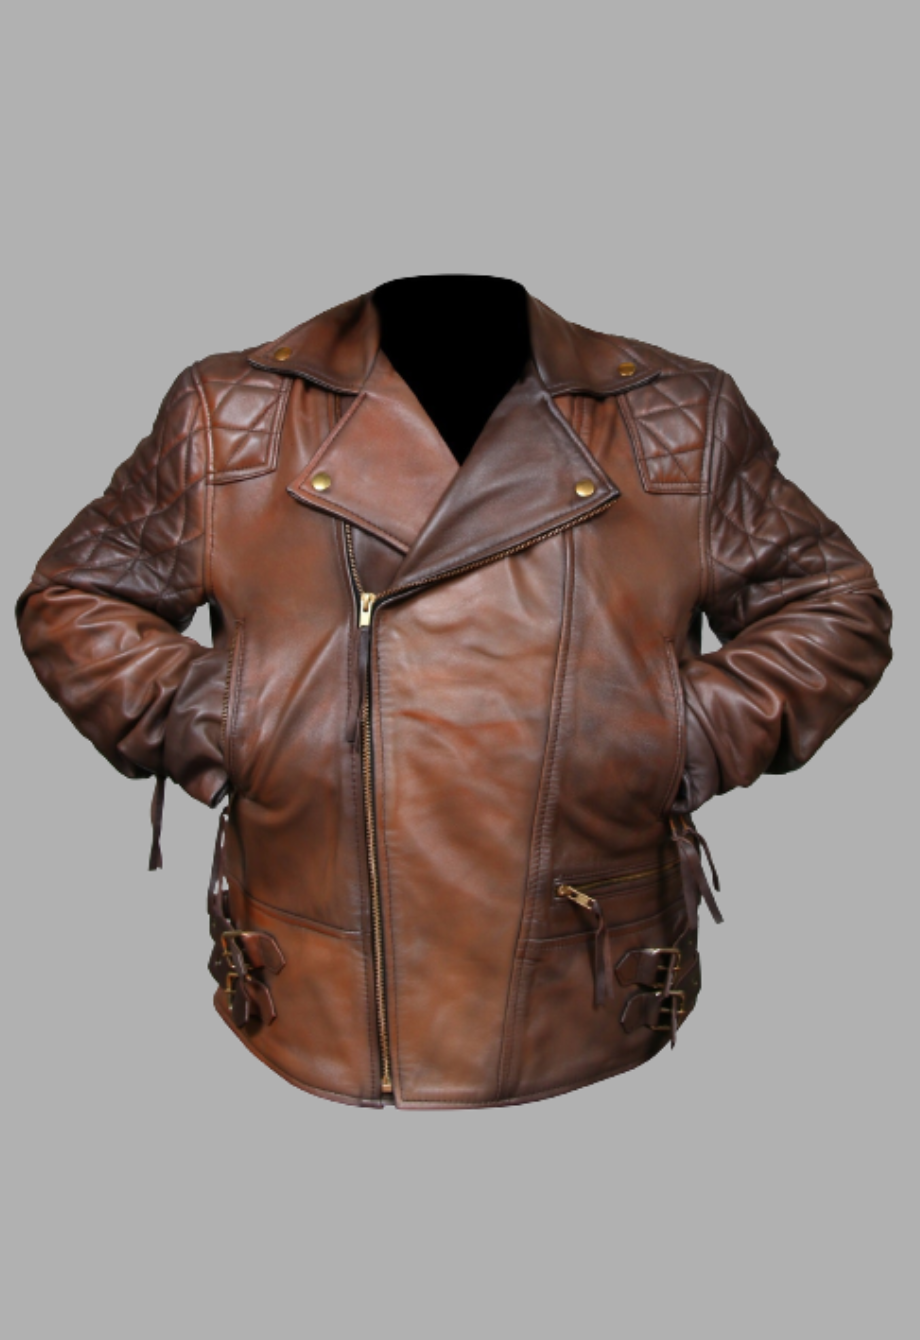 Women Biker Motorcycle Vintage Distressed Brown Real Leather Jacket